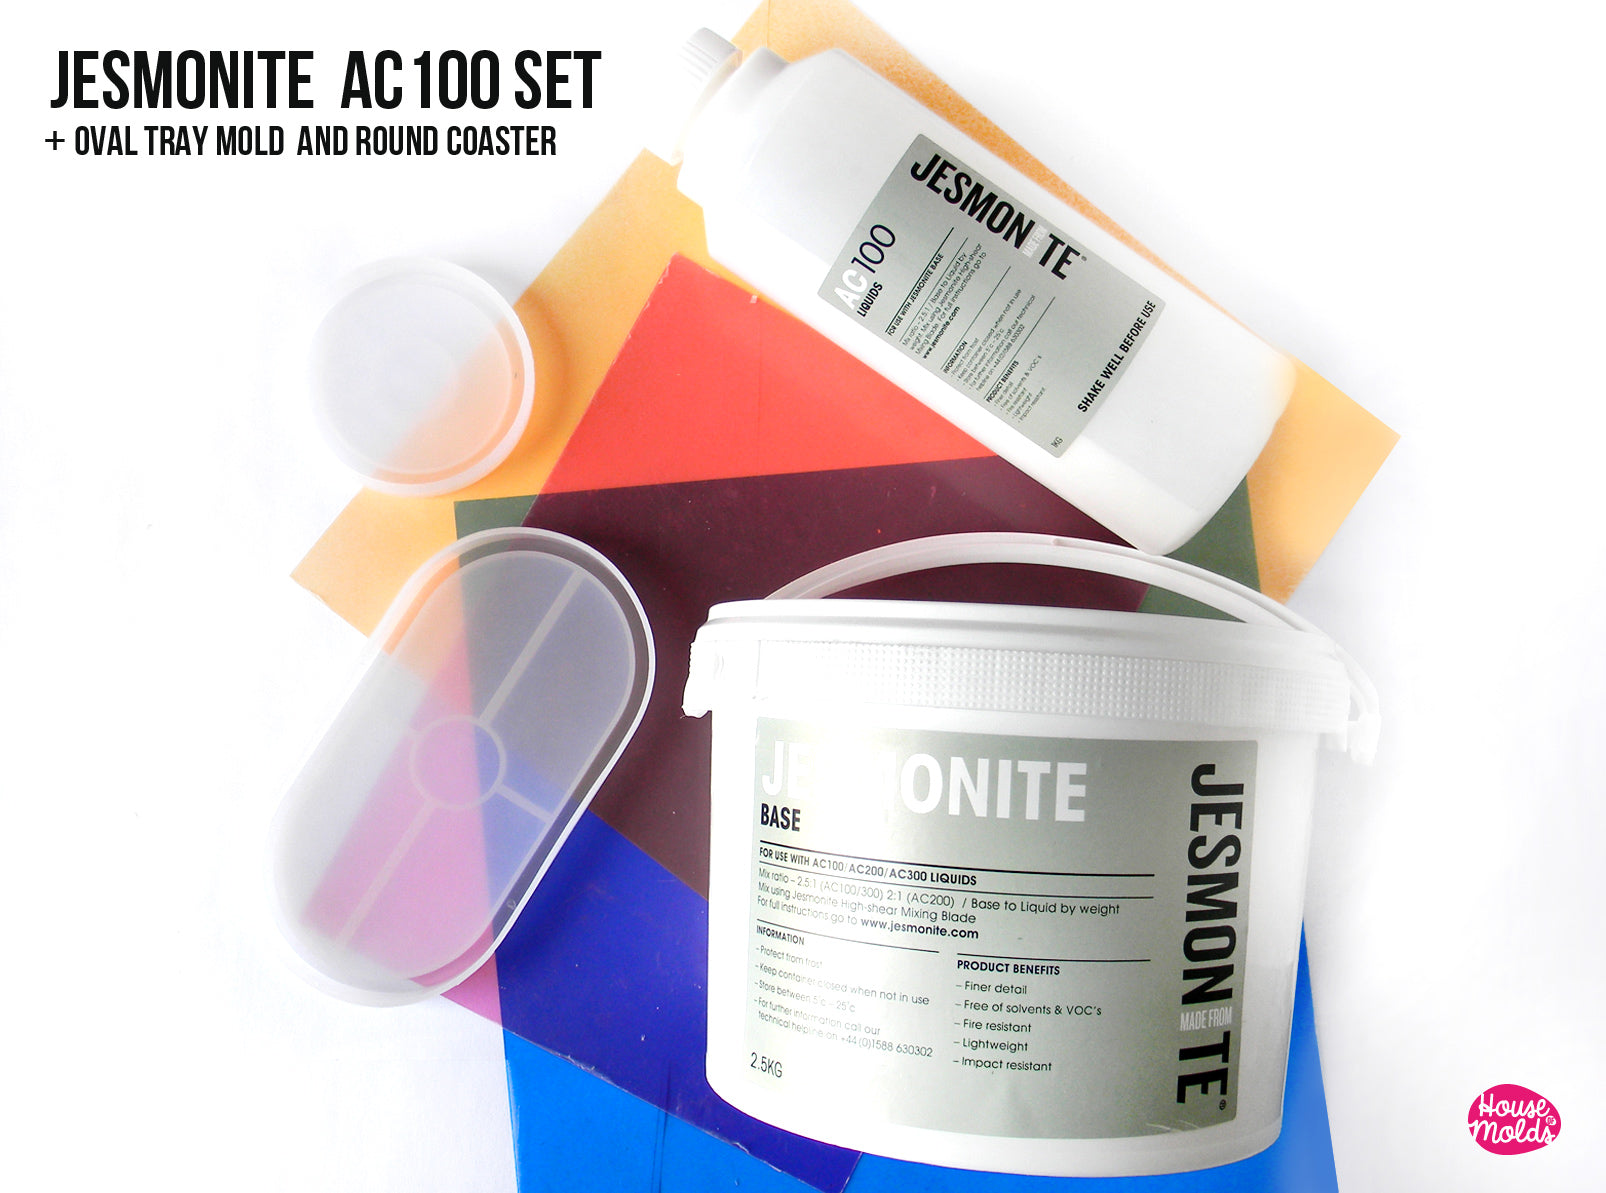 Jesmonite AC100 Kits – FTC Creative